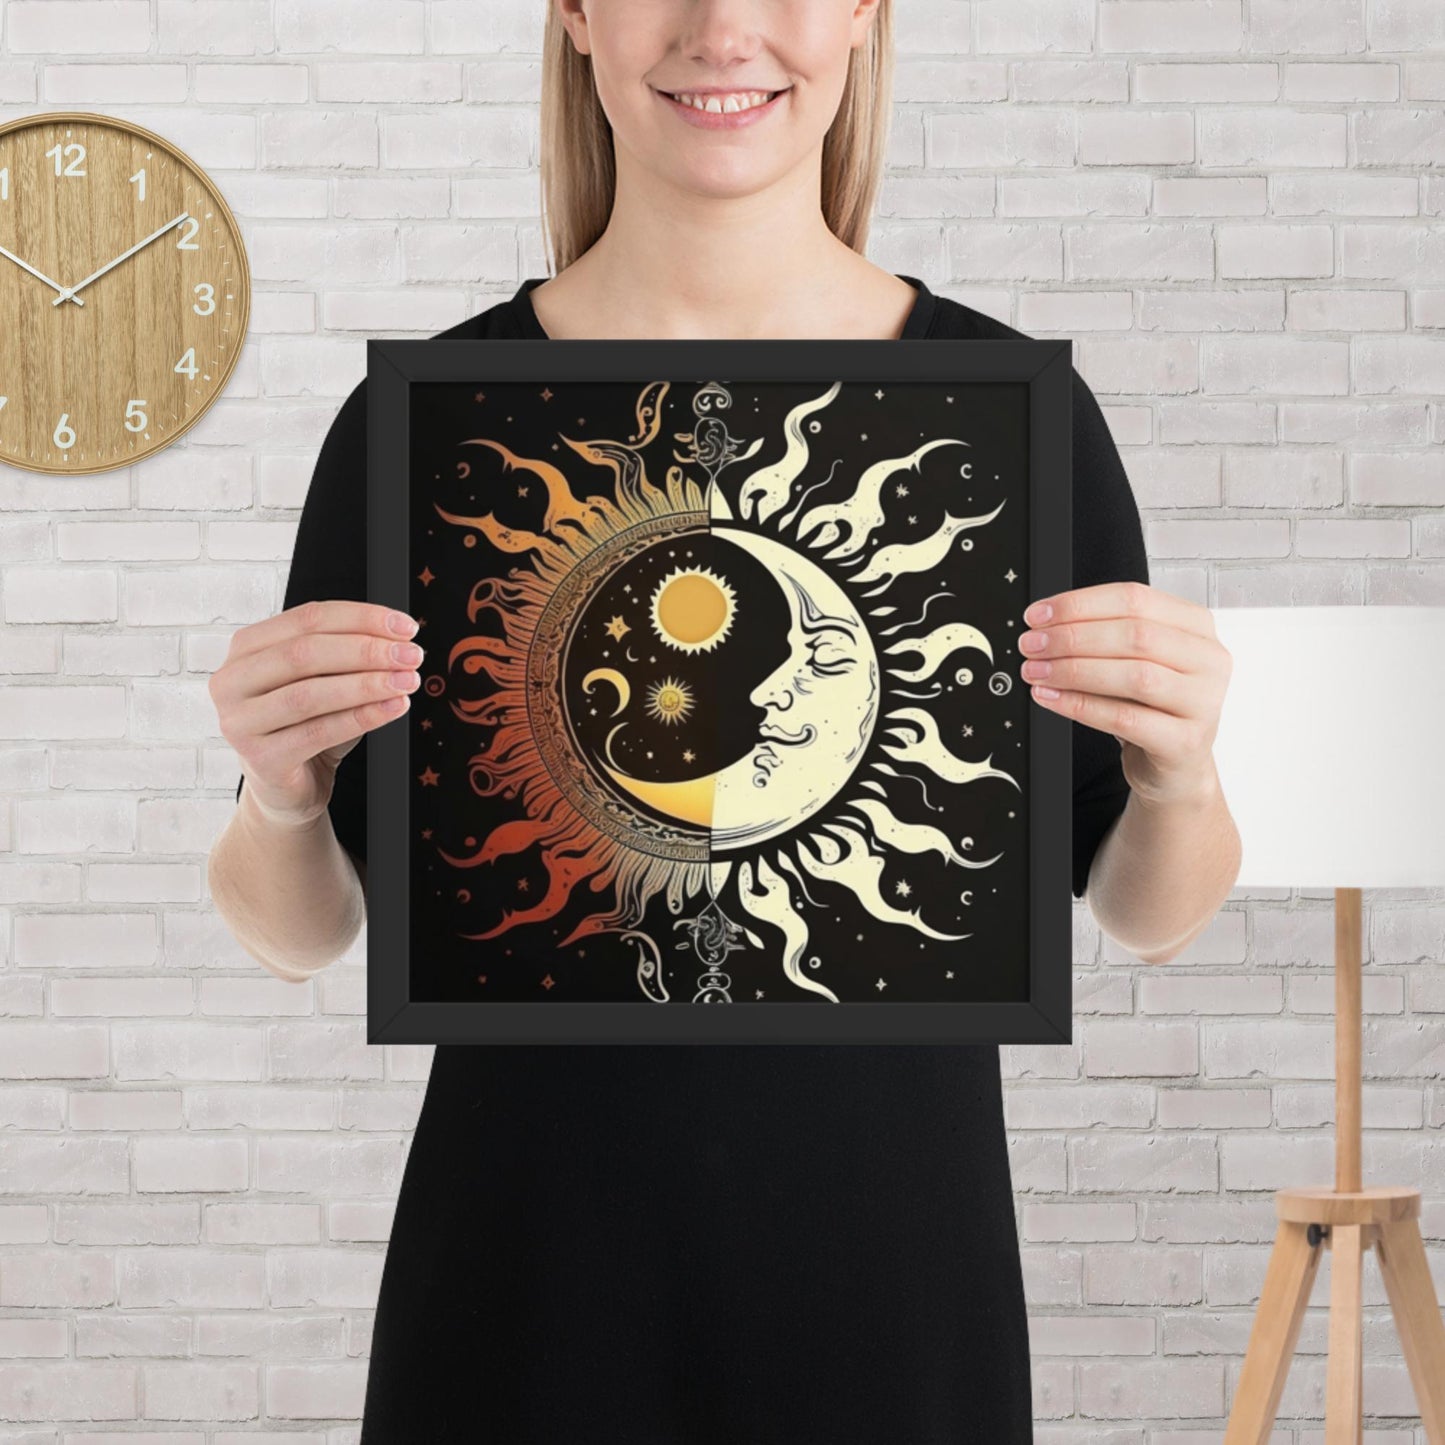 Art of Zen Celestial Moon Sun Framed Poster Decor Gift for Yoga Class